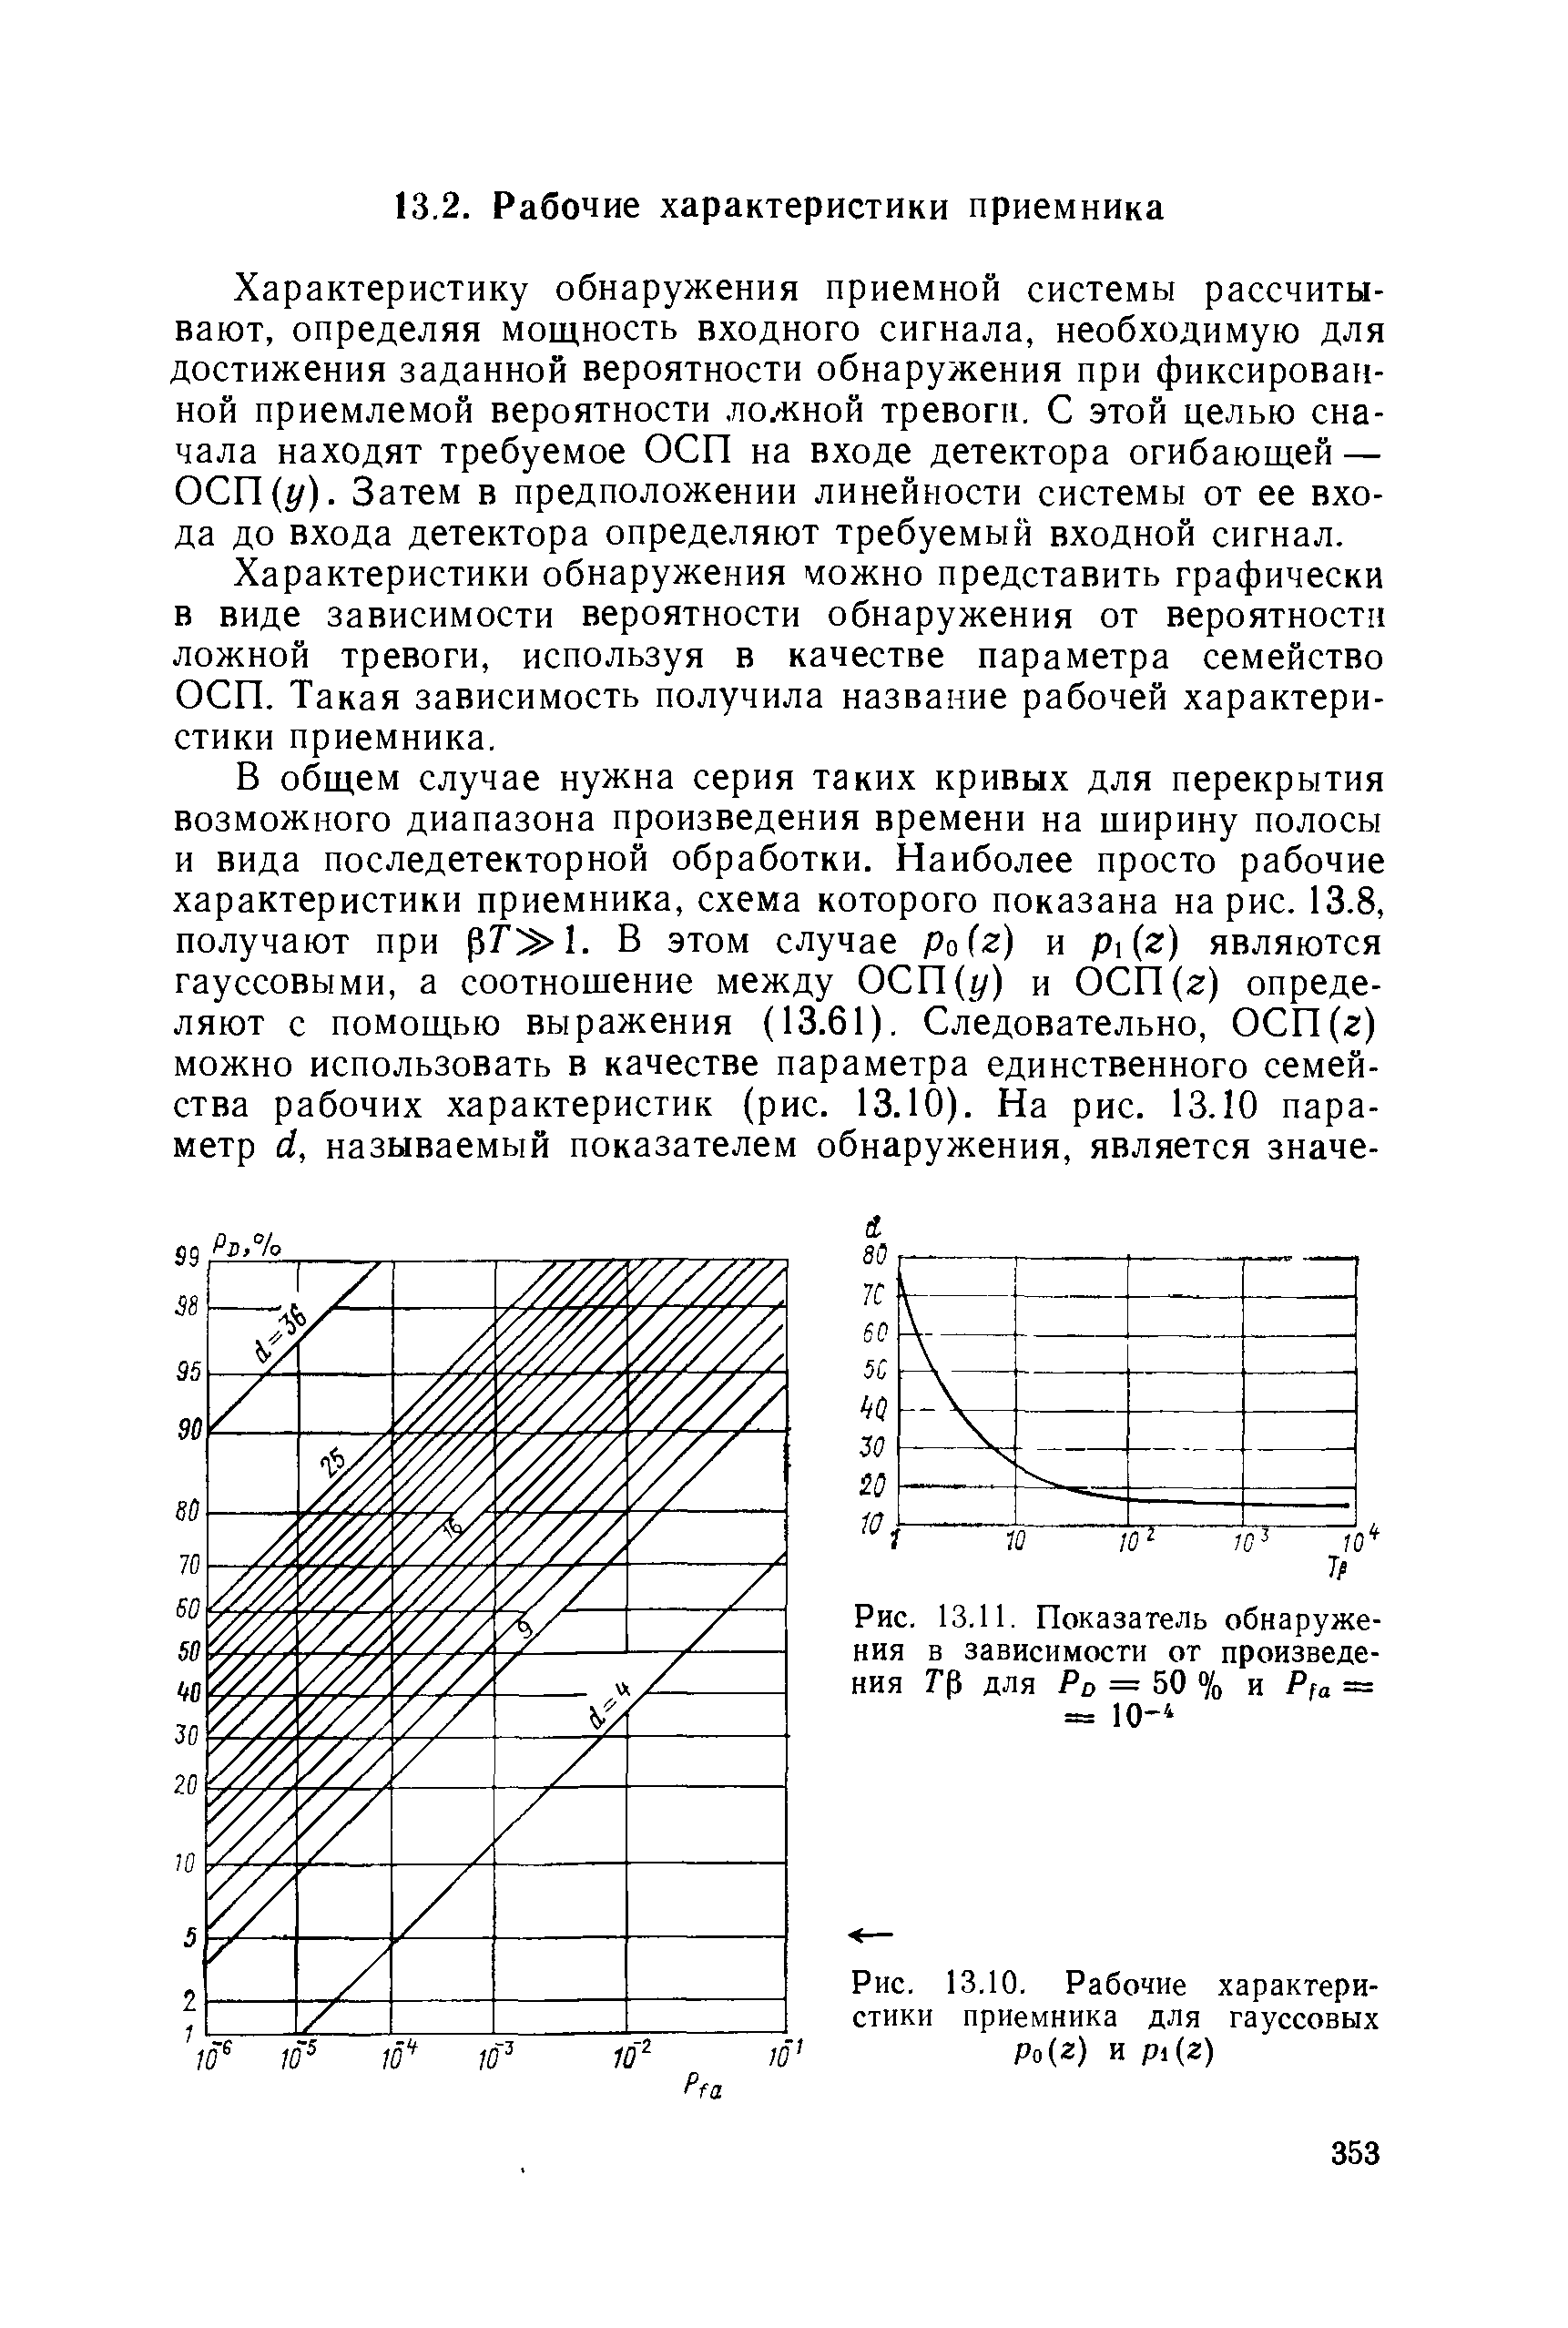 Рис. 13.10. Рабочие характеристики приемника для гауссовых Ро(2) и pi(г)
